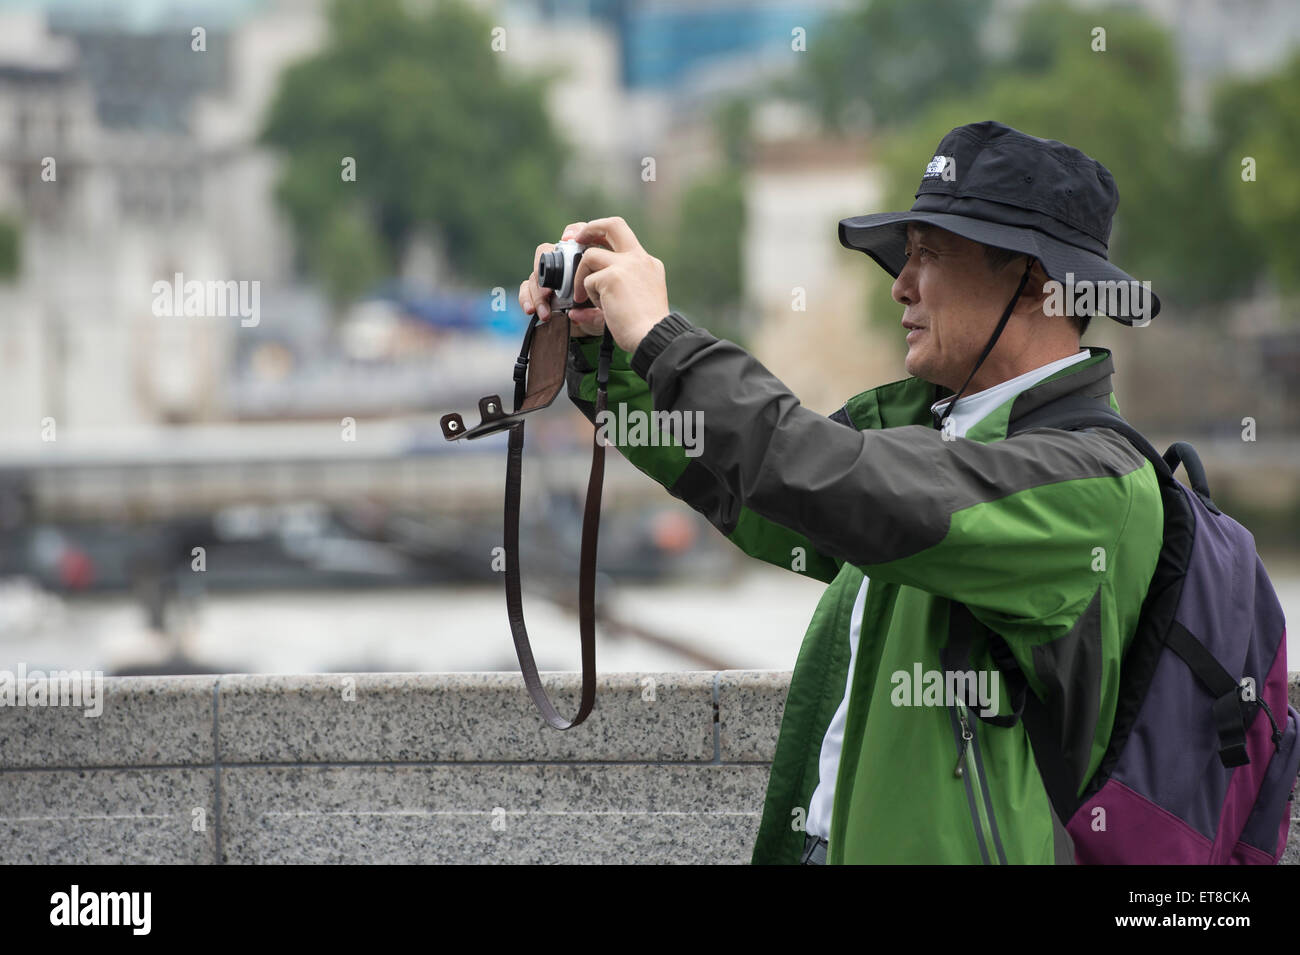 Japanische Touristen fotografieren in London mit Kameras, Handys und Selfie-sticks Stockfoto